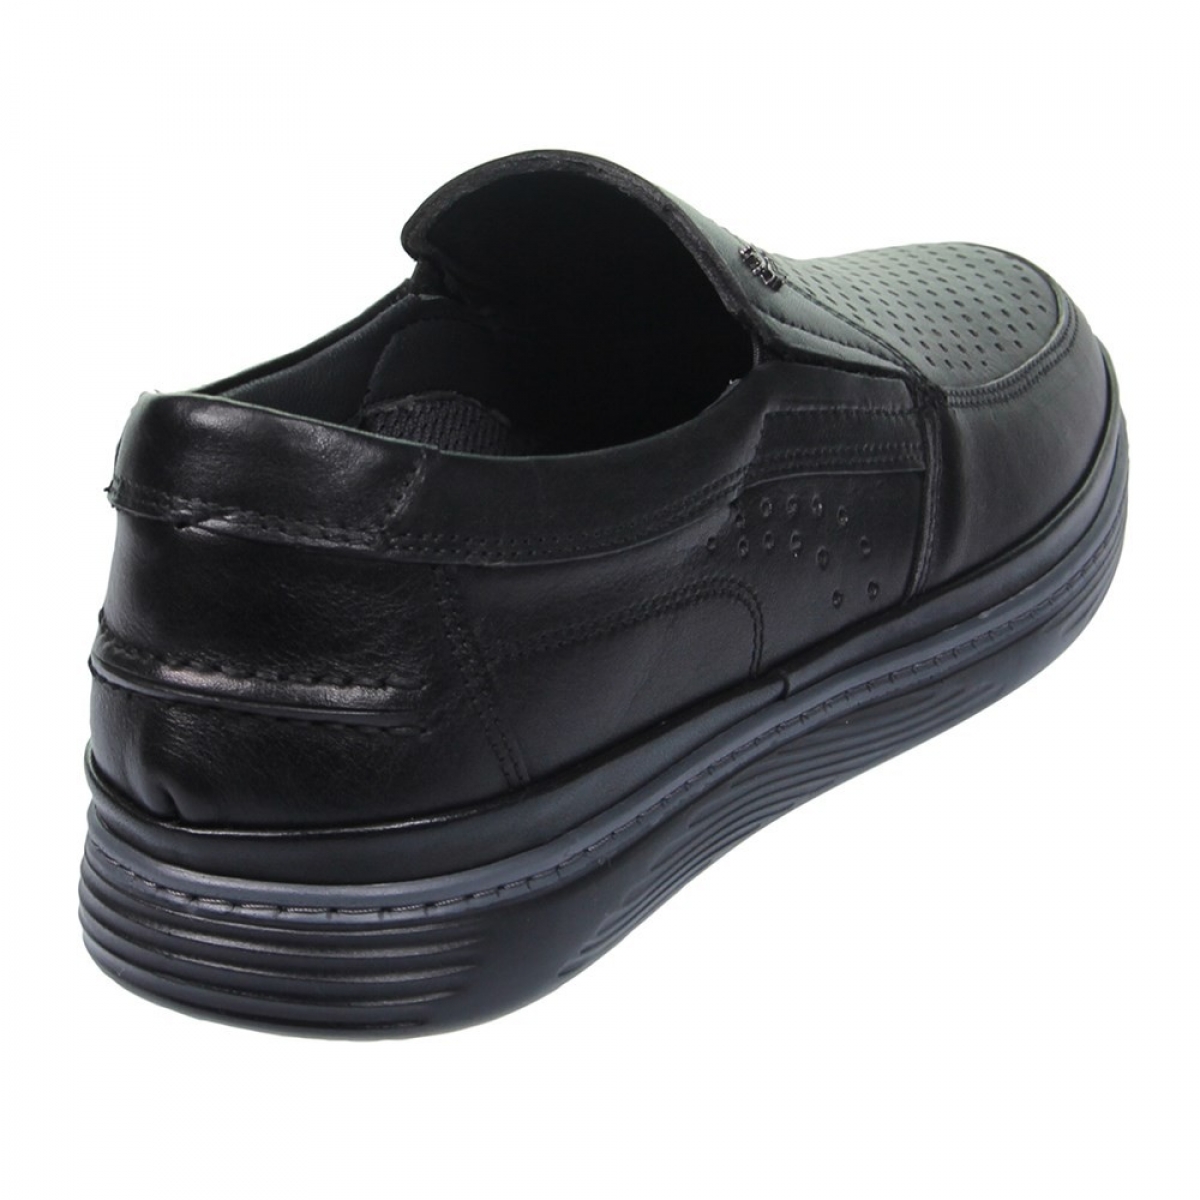 Flo Erkek Deri Siyah Casual Ayakkabı 211-4207MR 100. 3